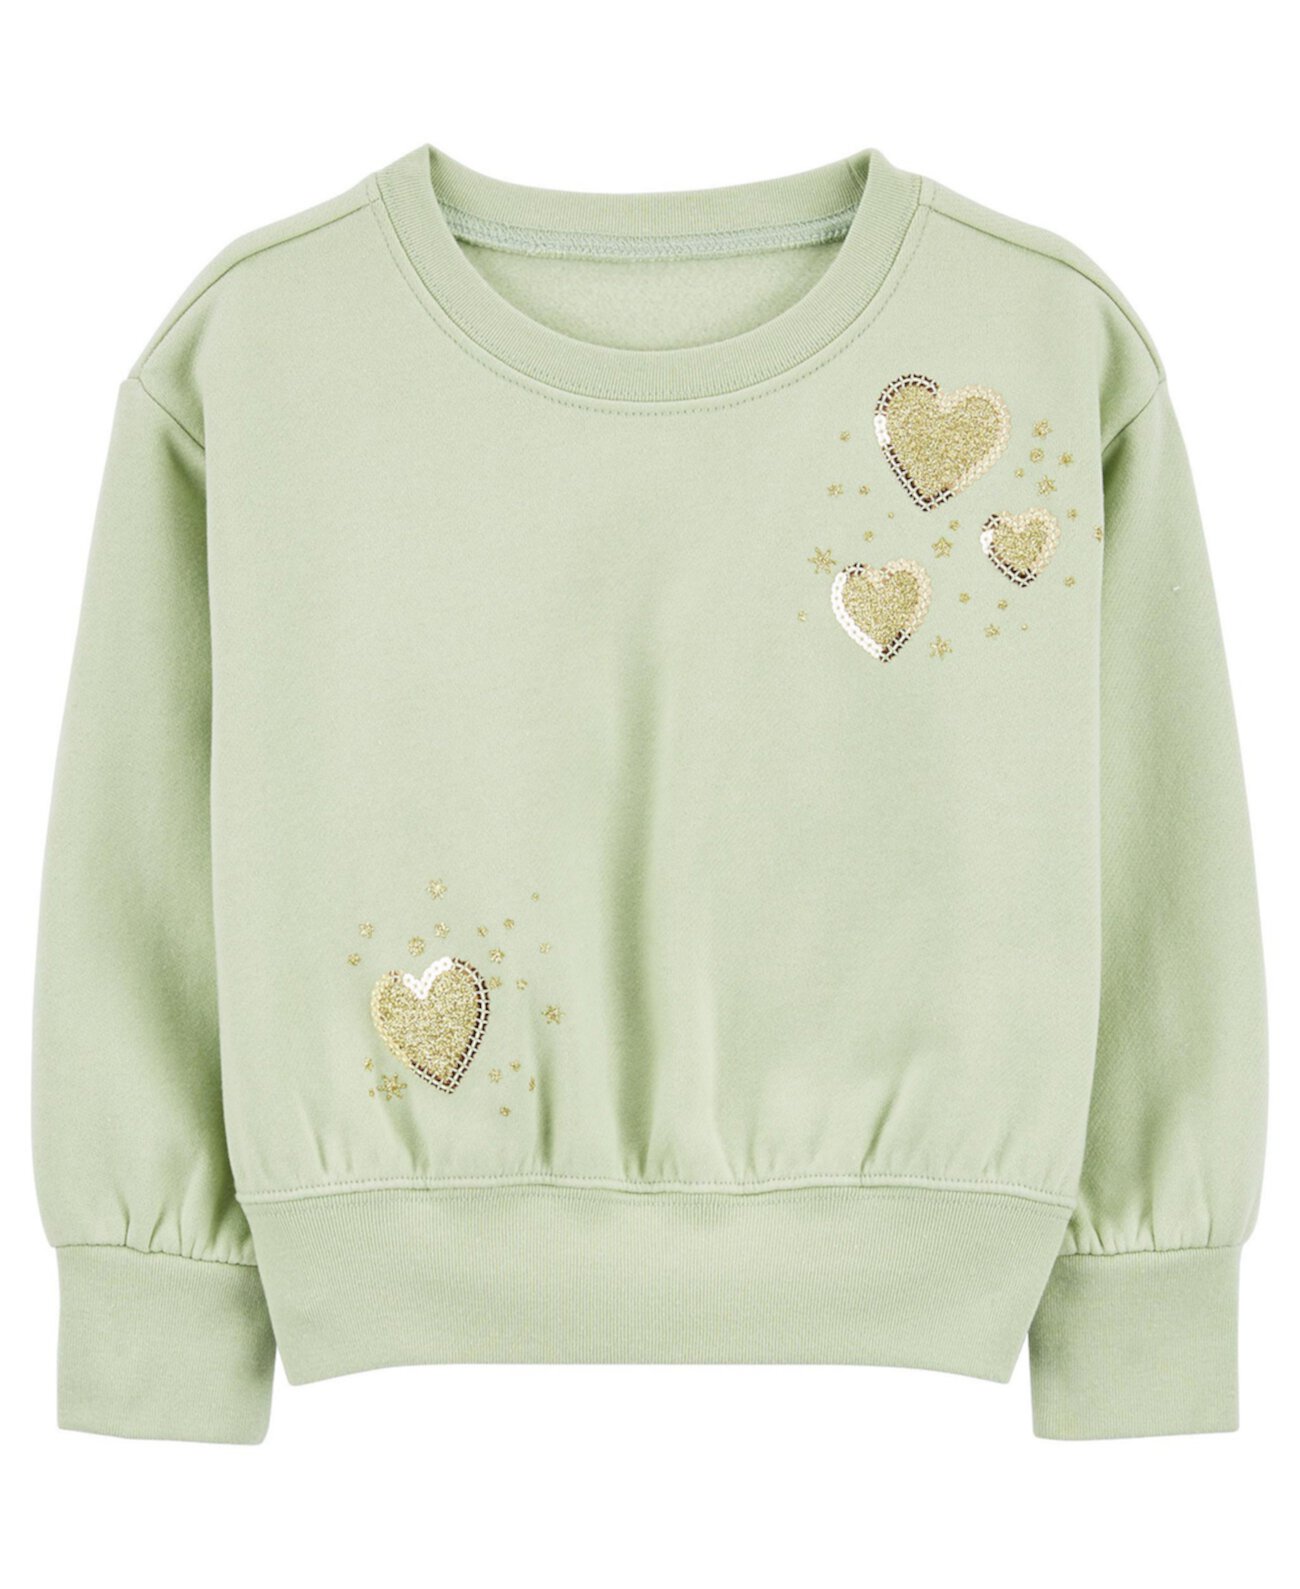 Пуловер с сердечками для маленьких девочек Carter's